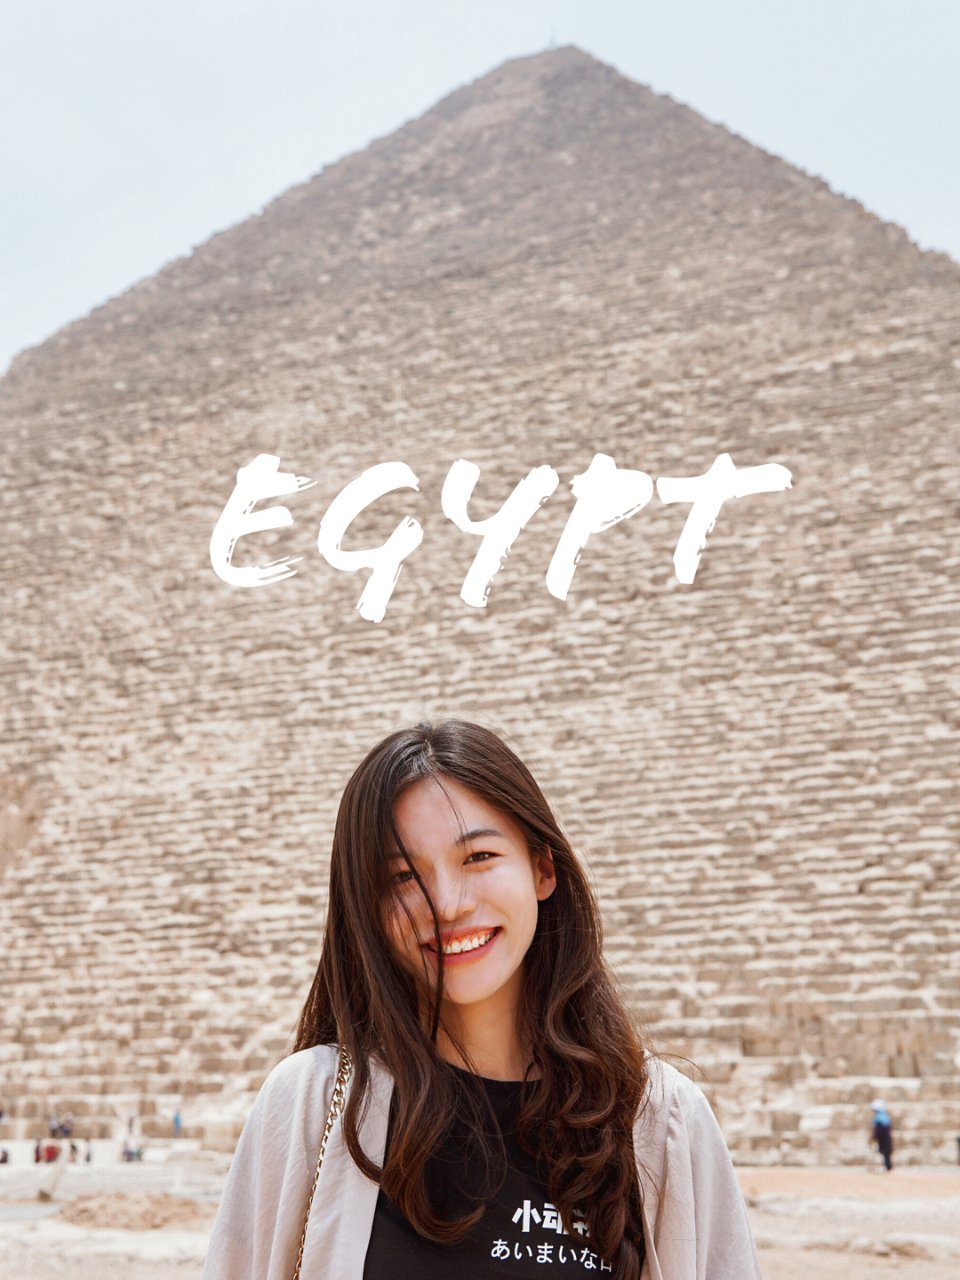 埃及🇪🇬：想象与现实中的开罗...